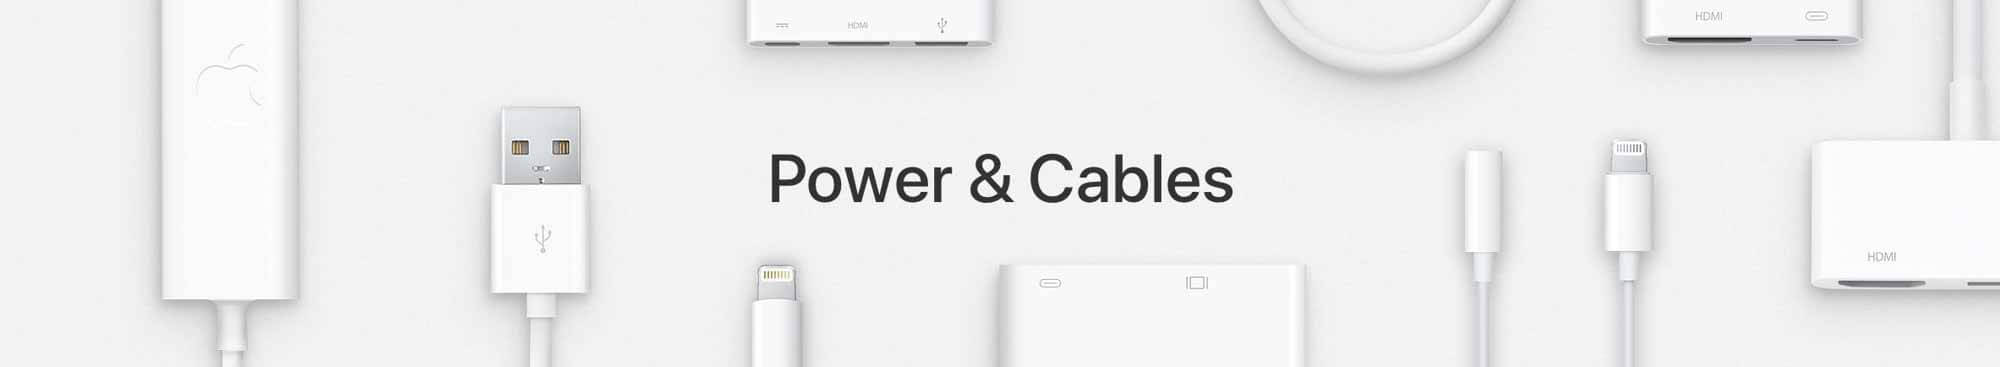 Быстрая зарядка iPhone iPad с помощью зарядного устройства MacBook?